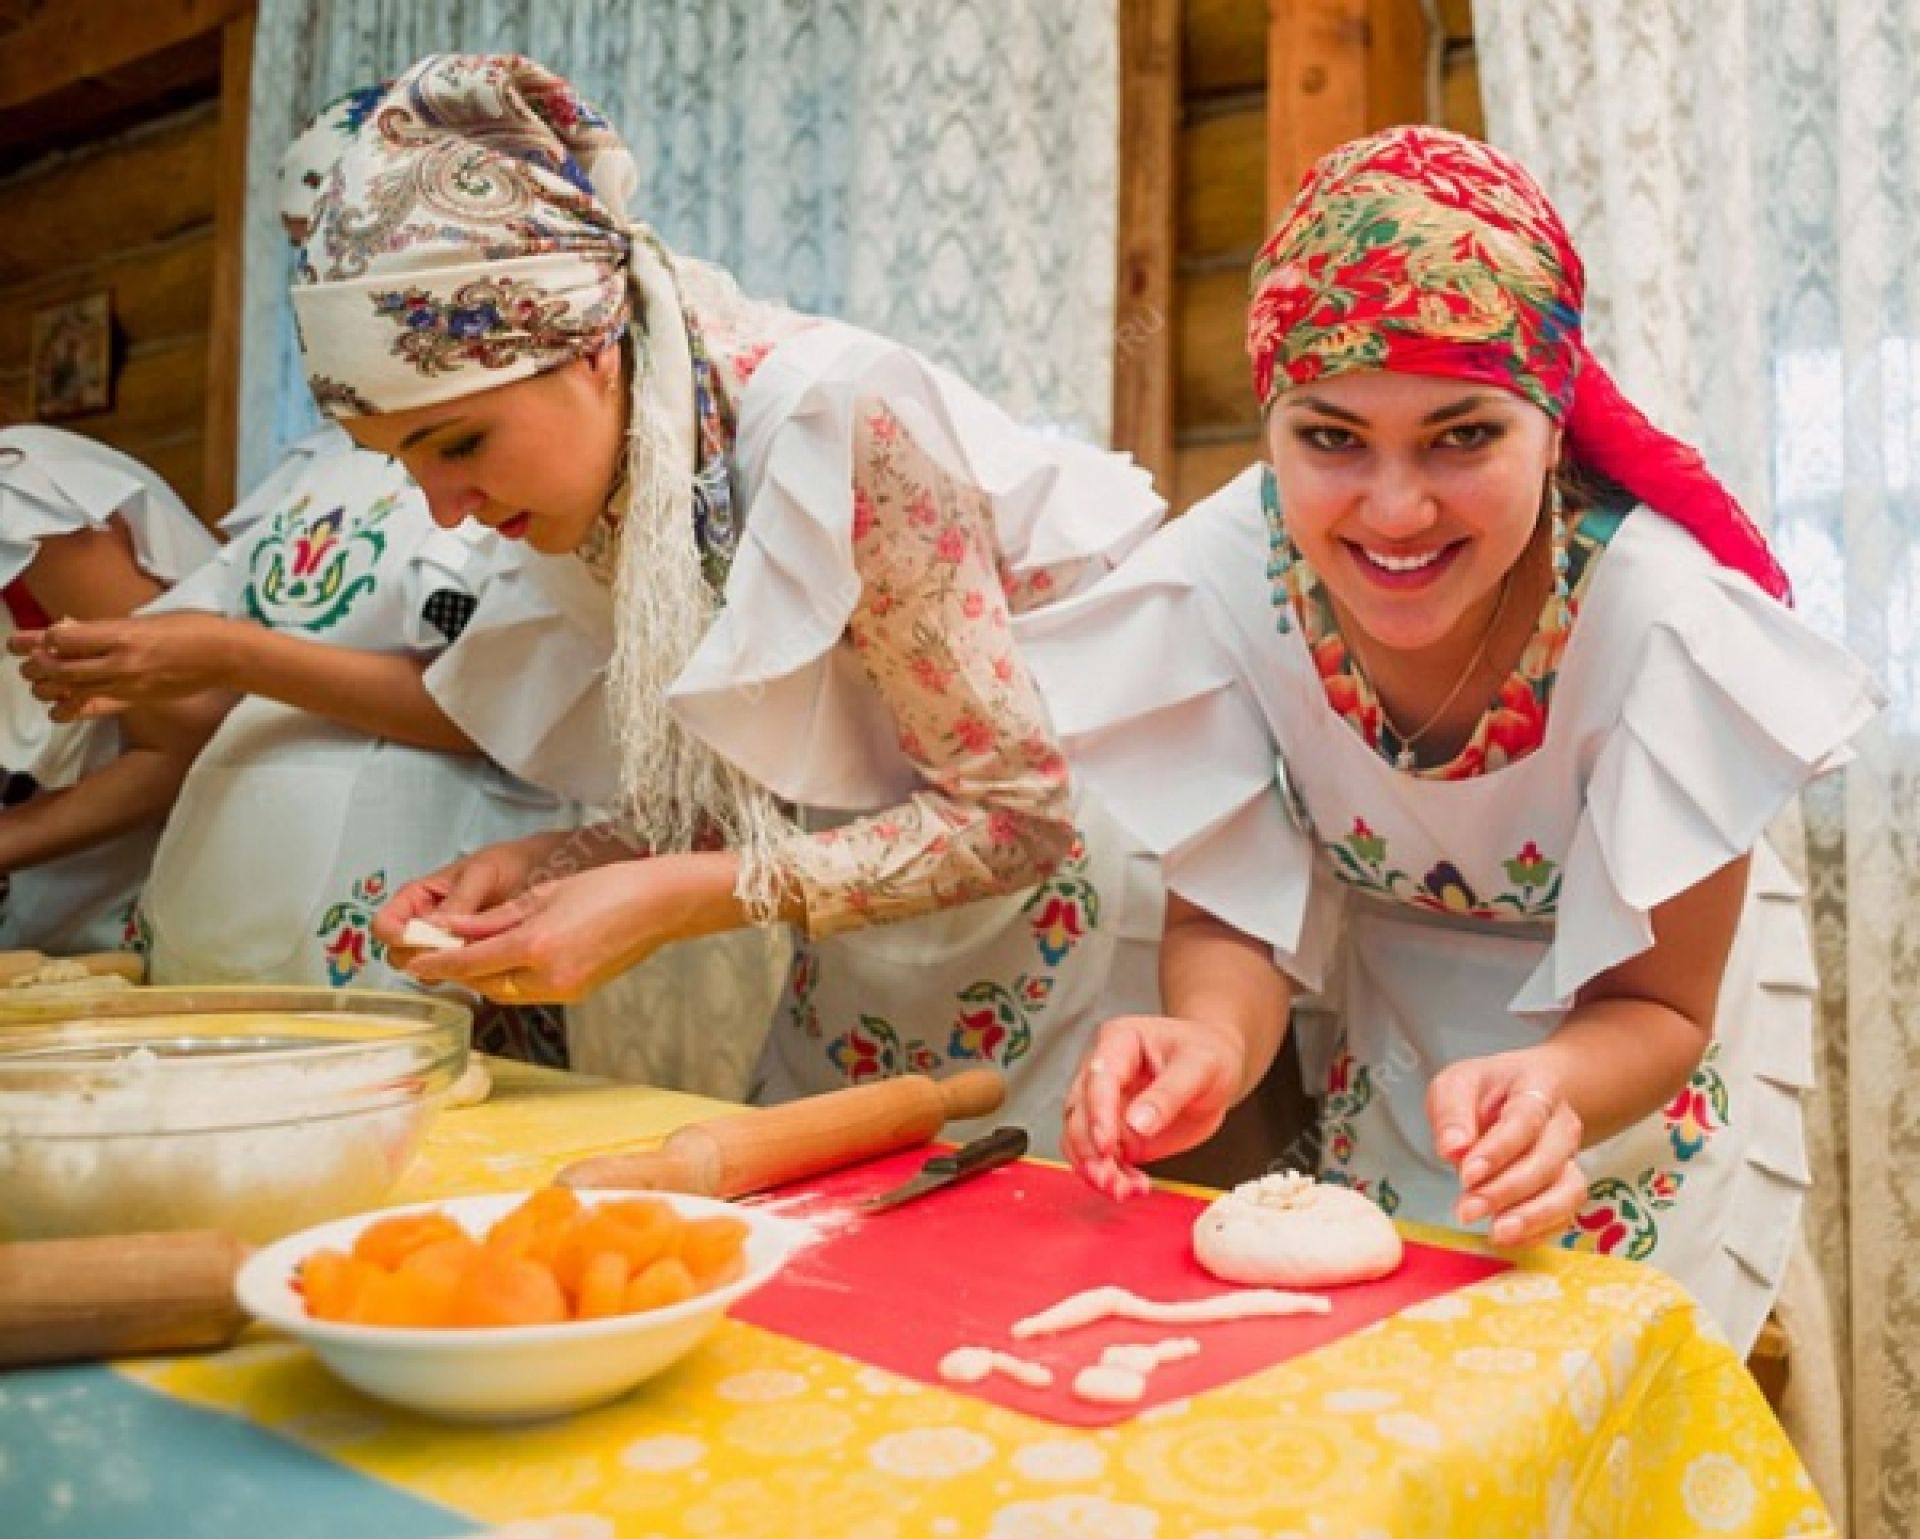 Особенности татарской кухни